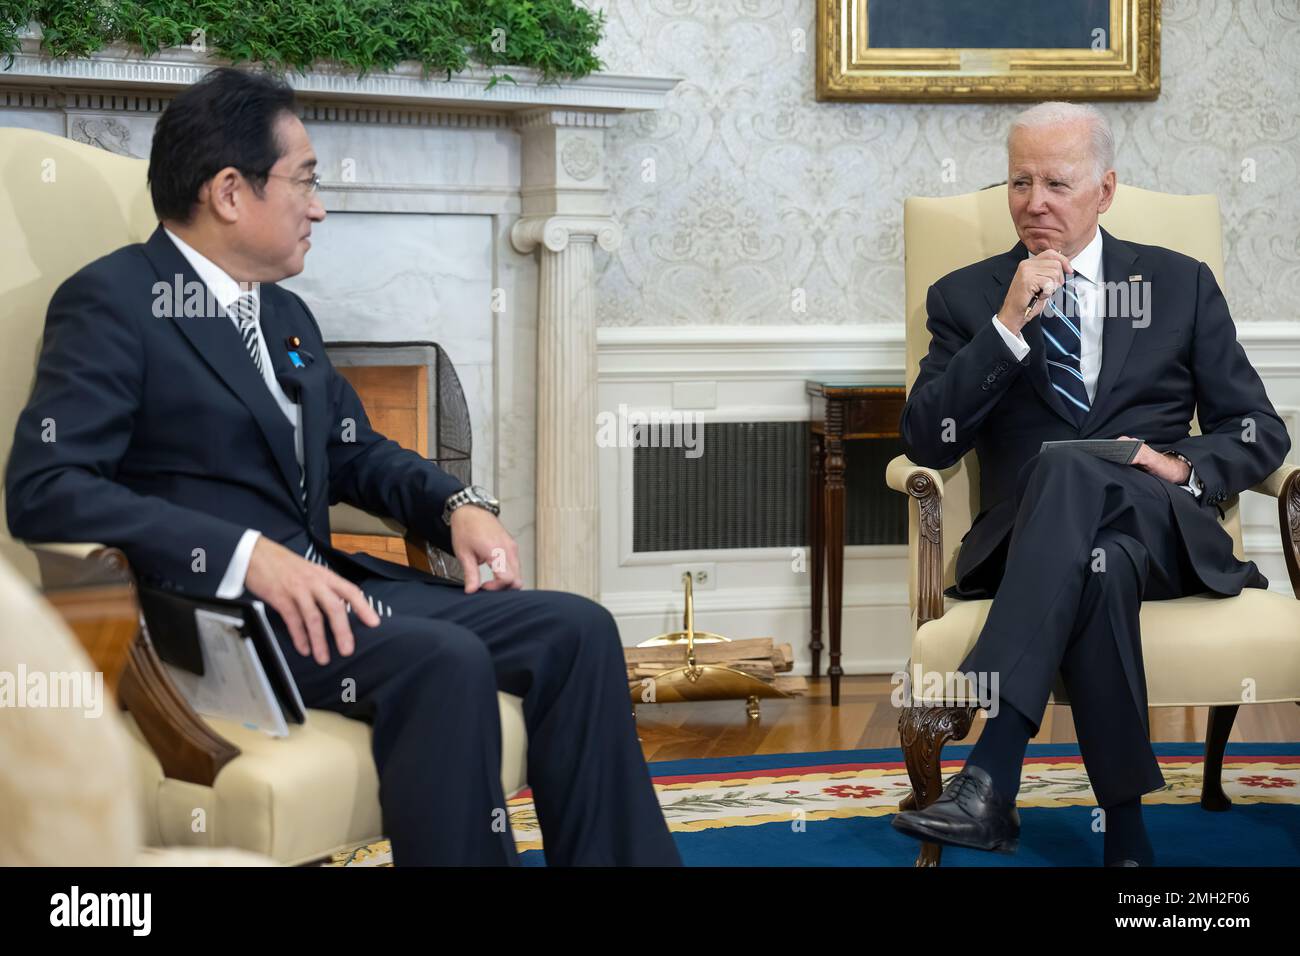 Le Président Joe Biden rencontre le Premier ministre japonais Fumio Kishida, vendredi, 13 janvier 2023, dans le Bureau ovale. (Photo officielle de la Maison Blanche par Adam Schultz) Banque D'Images